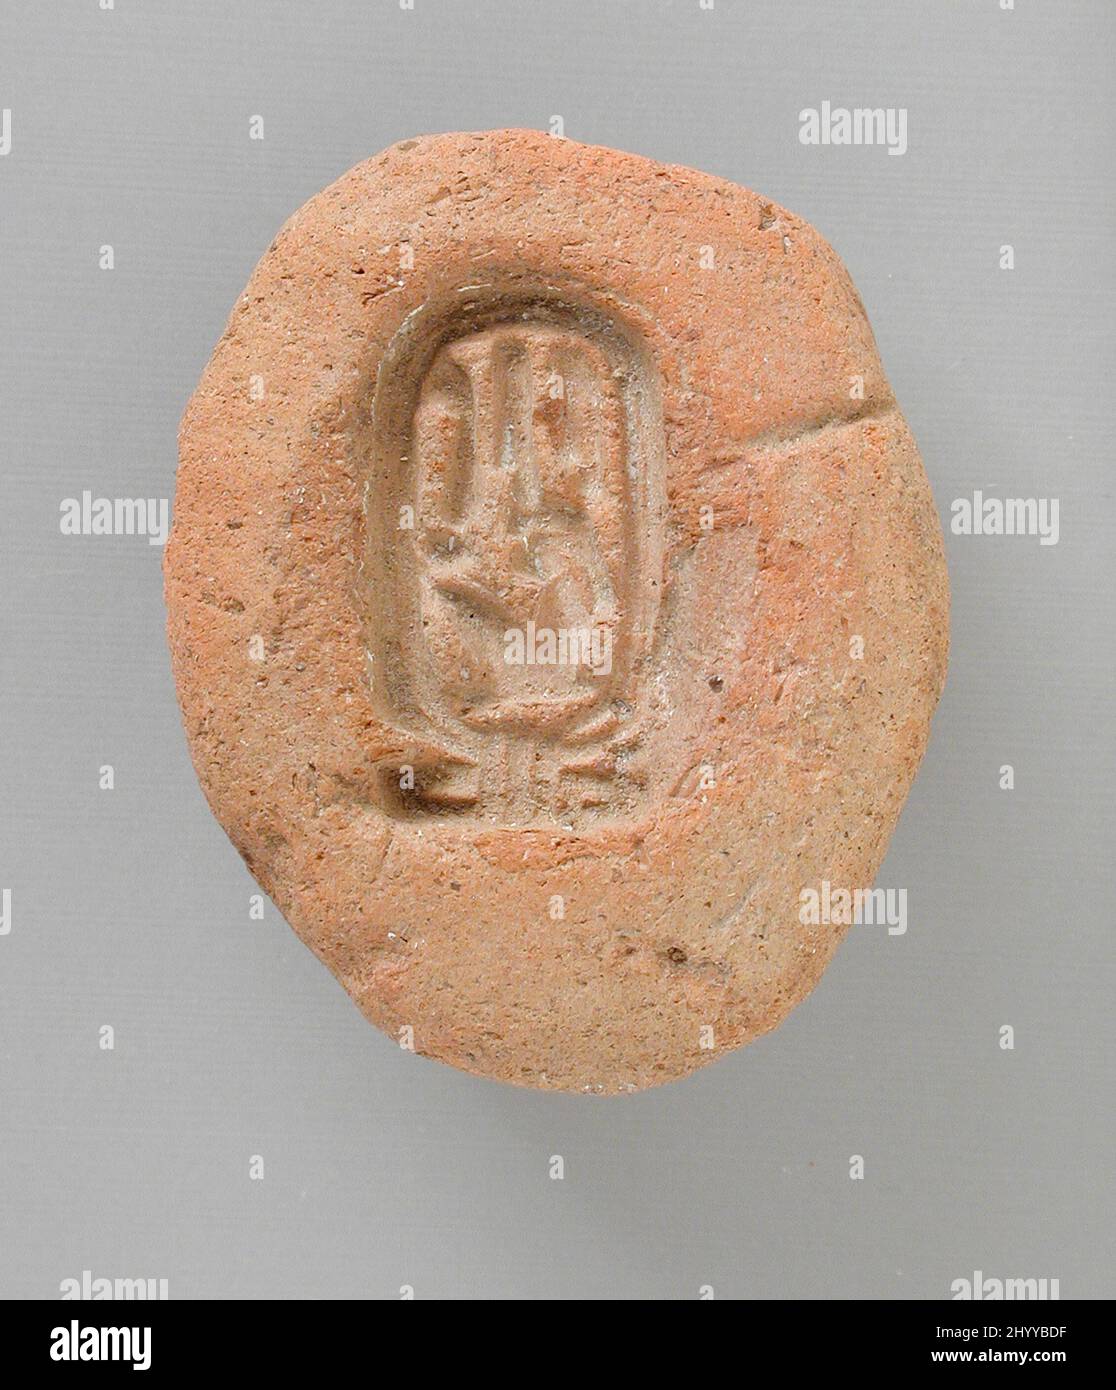 Moule avec la cartouche de la reine Tiy. Égypte, Nouveau Royaume, dynastie 18th (1410 - 1355 BCE). Outils et équipement; moules. Terre cuite Banque D'Images